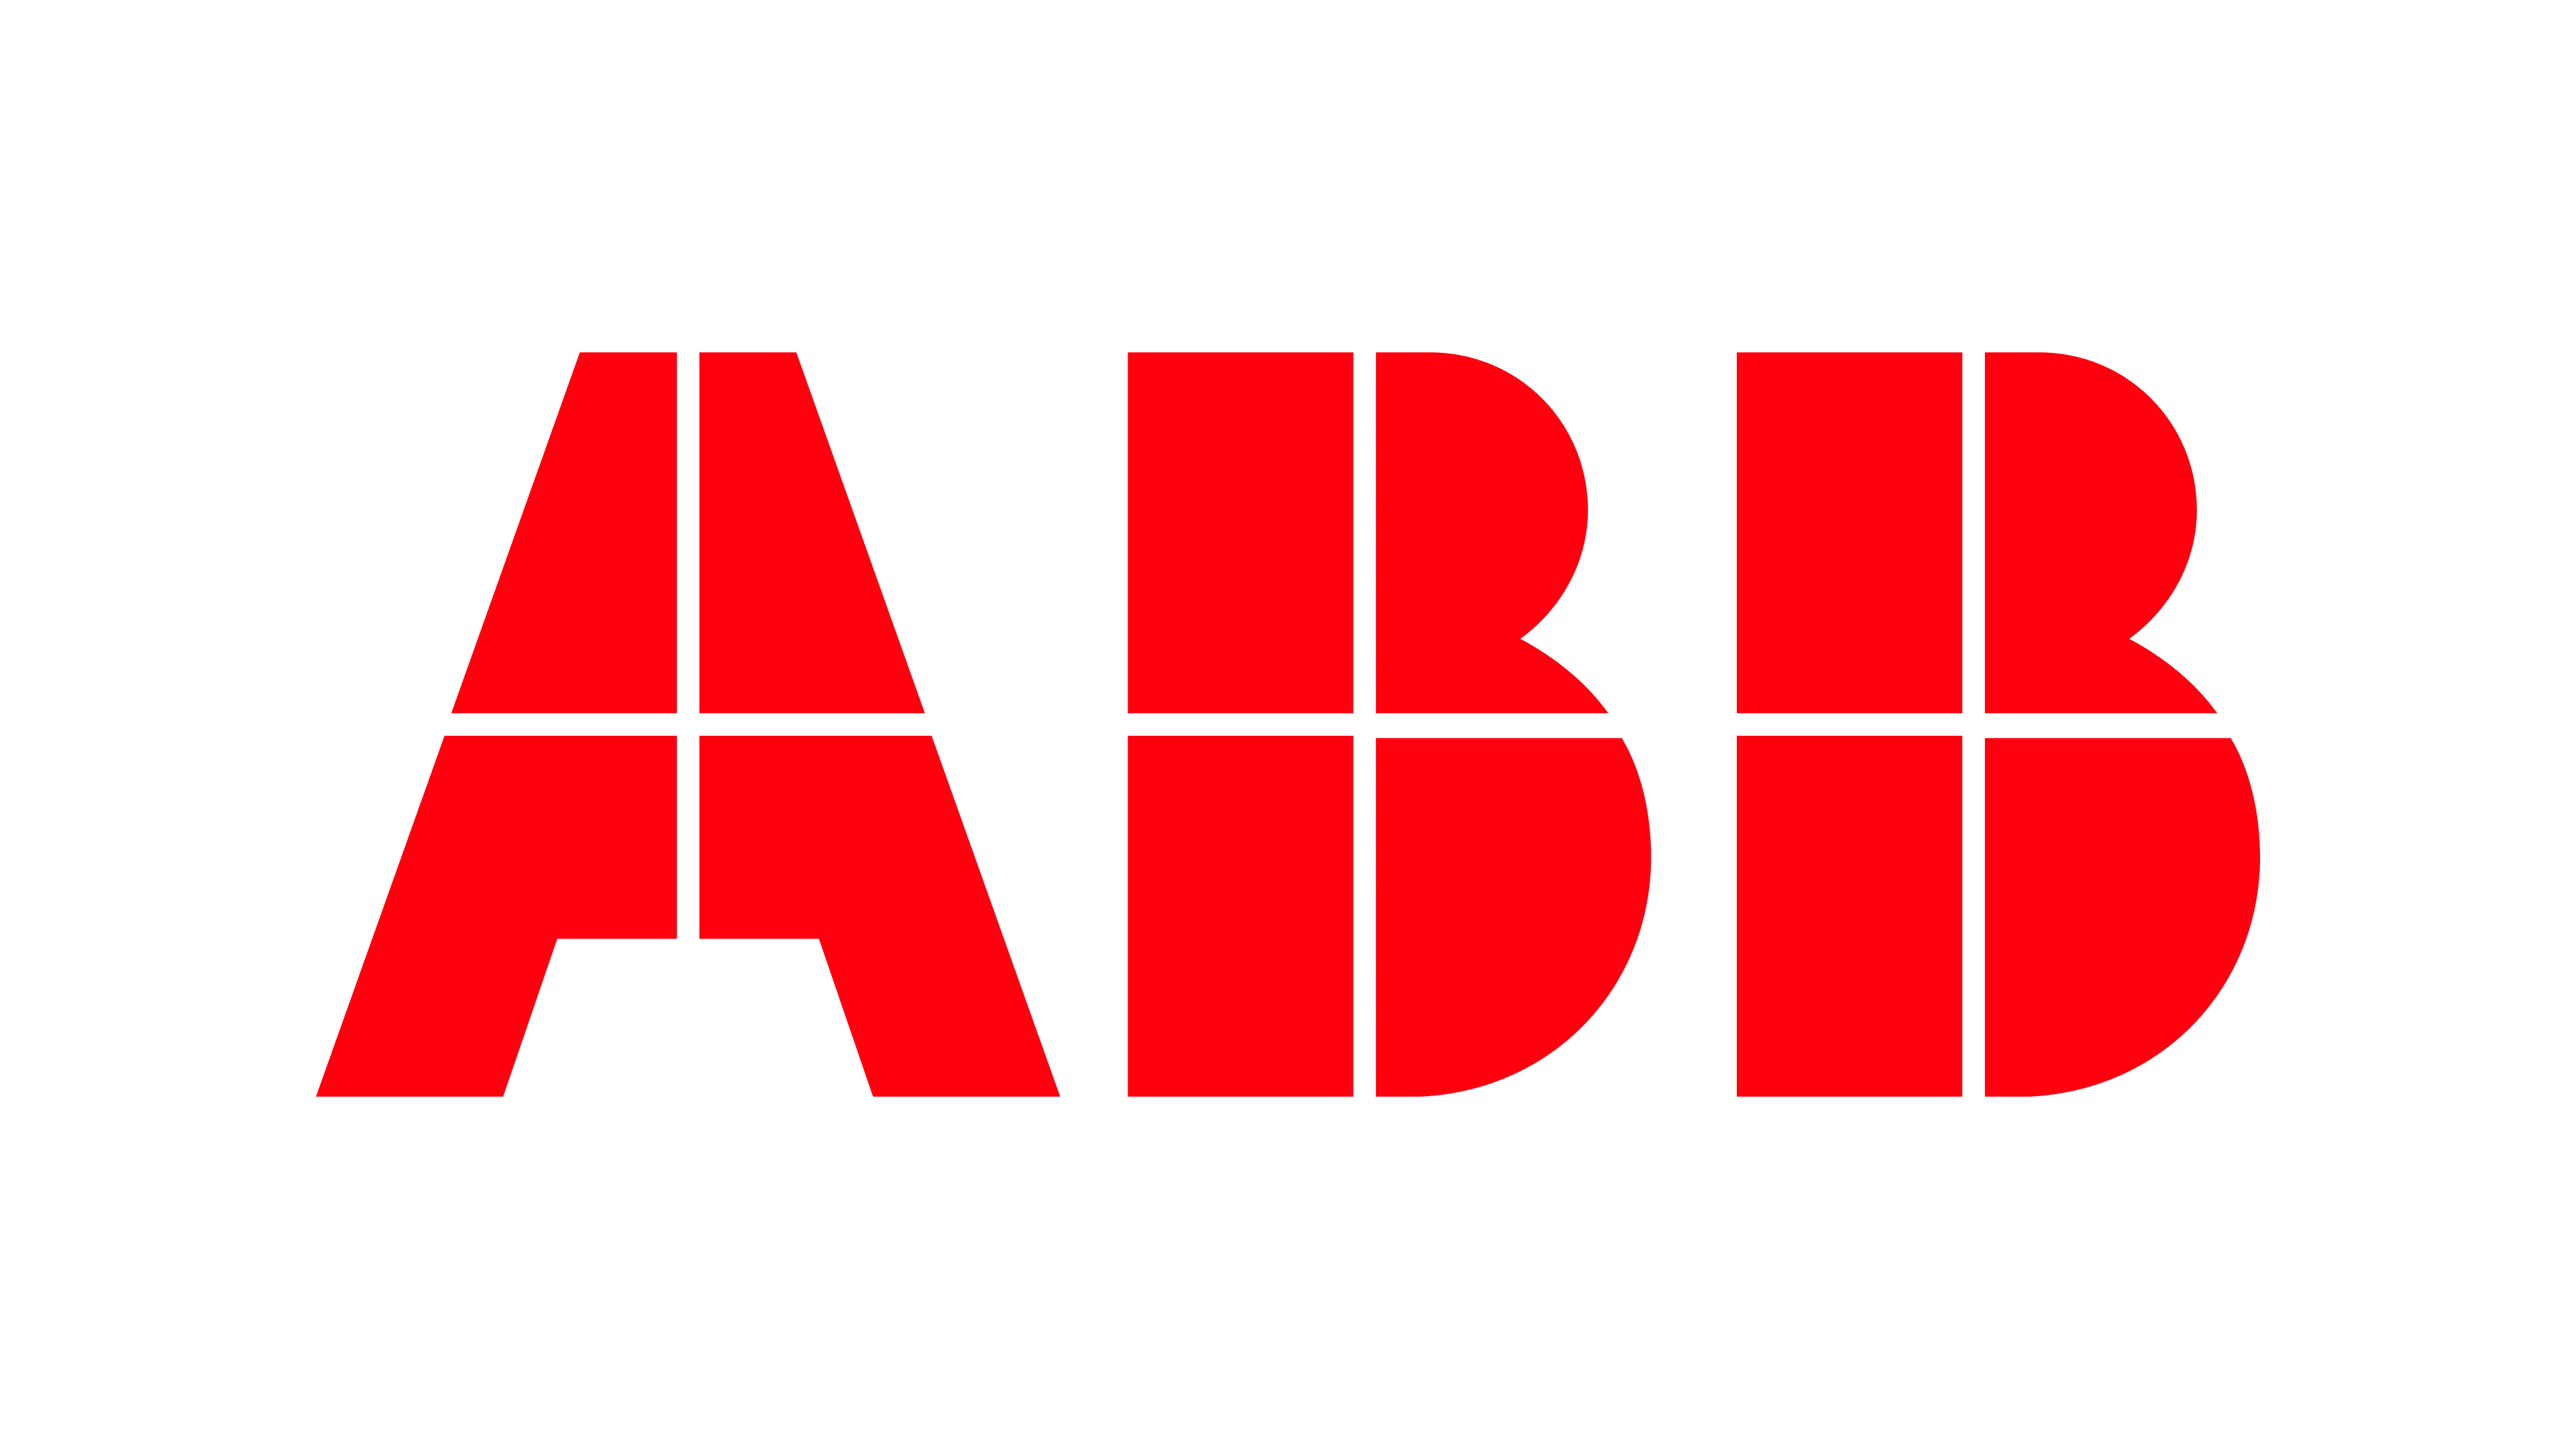 logo-ABB